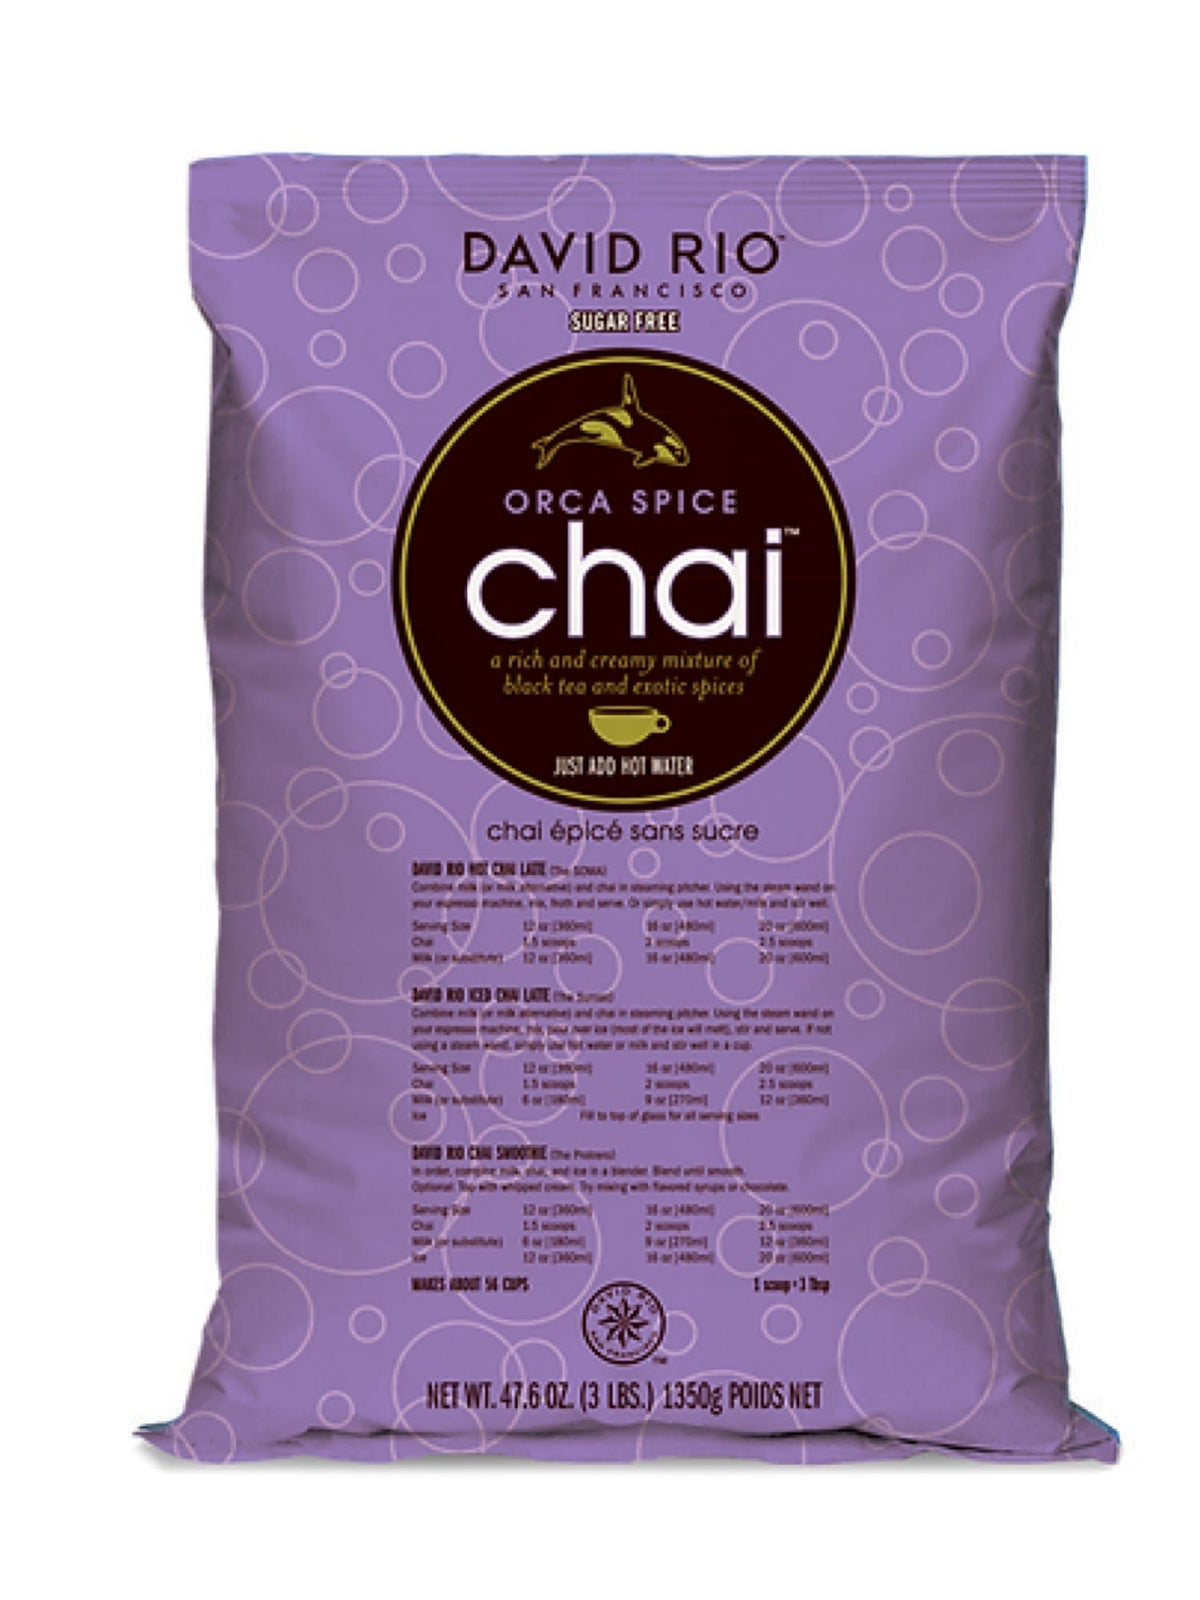 David Rio Orca Spice Chai, 1350g, ideel til chai-elskere der ønsker en sukkerfri smagsoplevelse